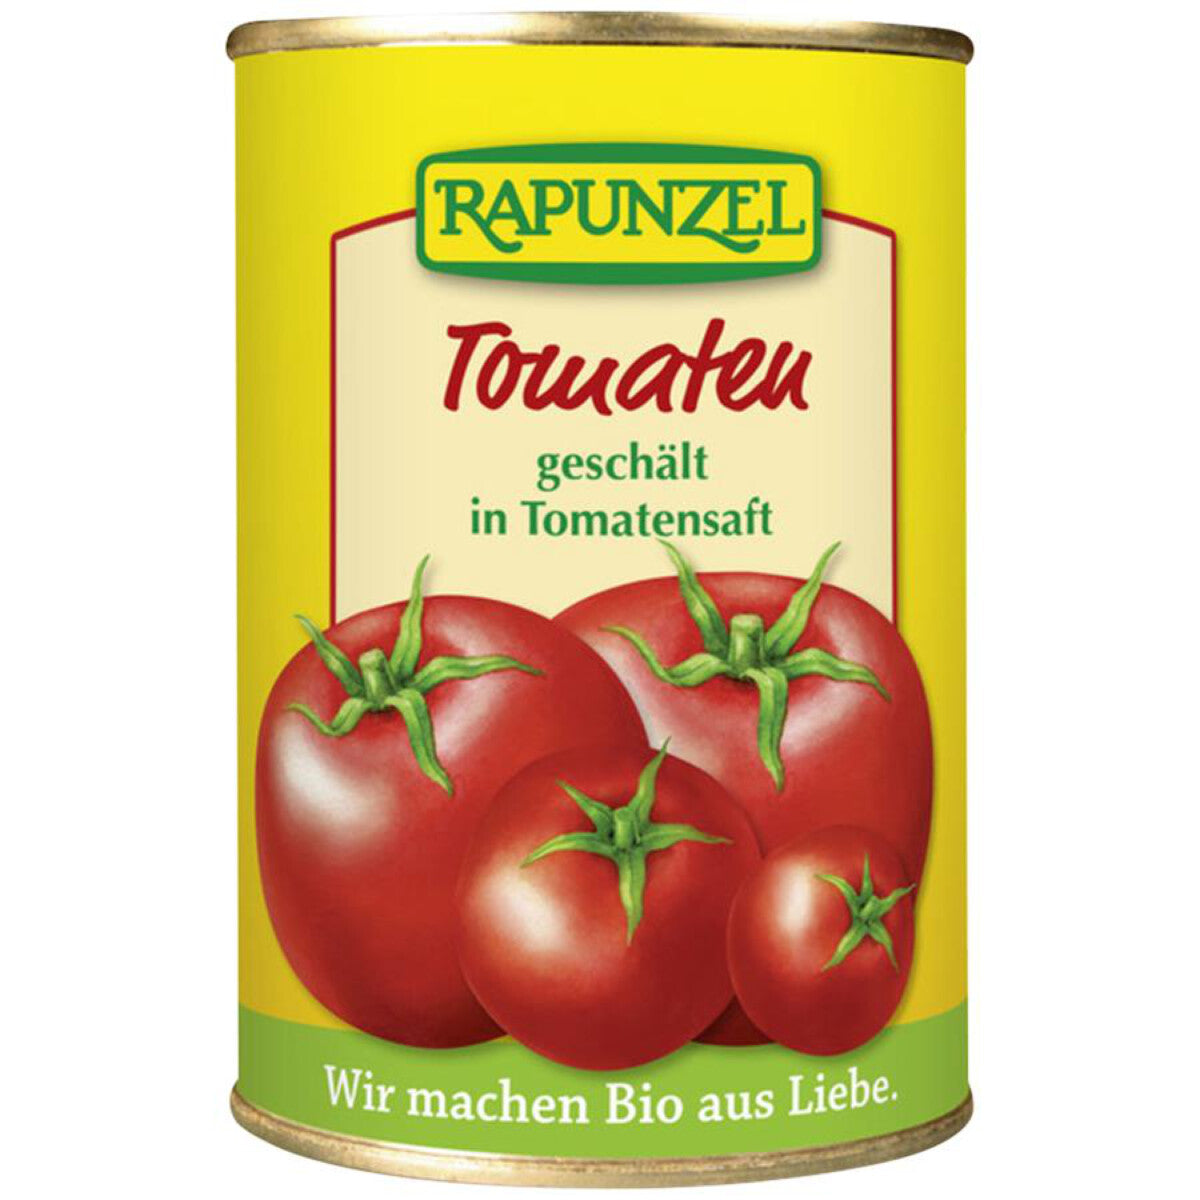 RAPUNZEL Tomaten geschält – 400 g